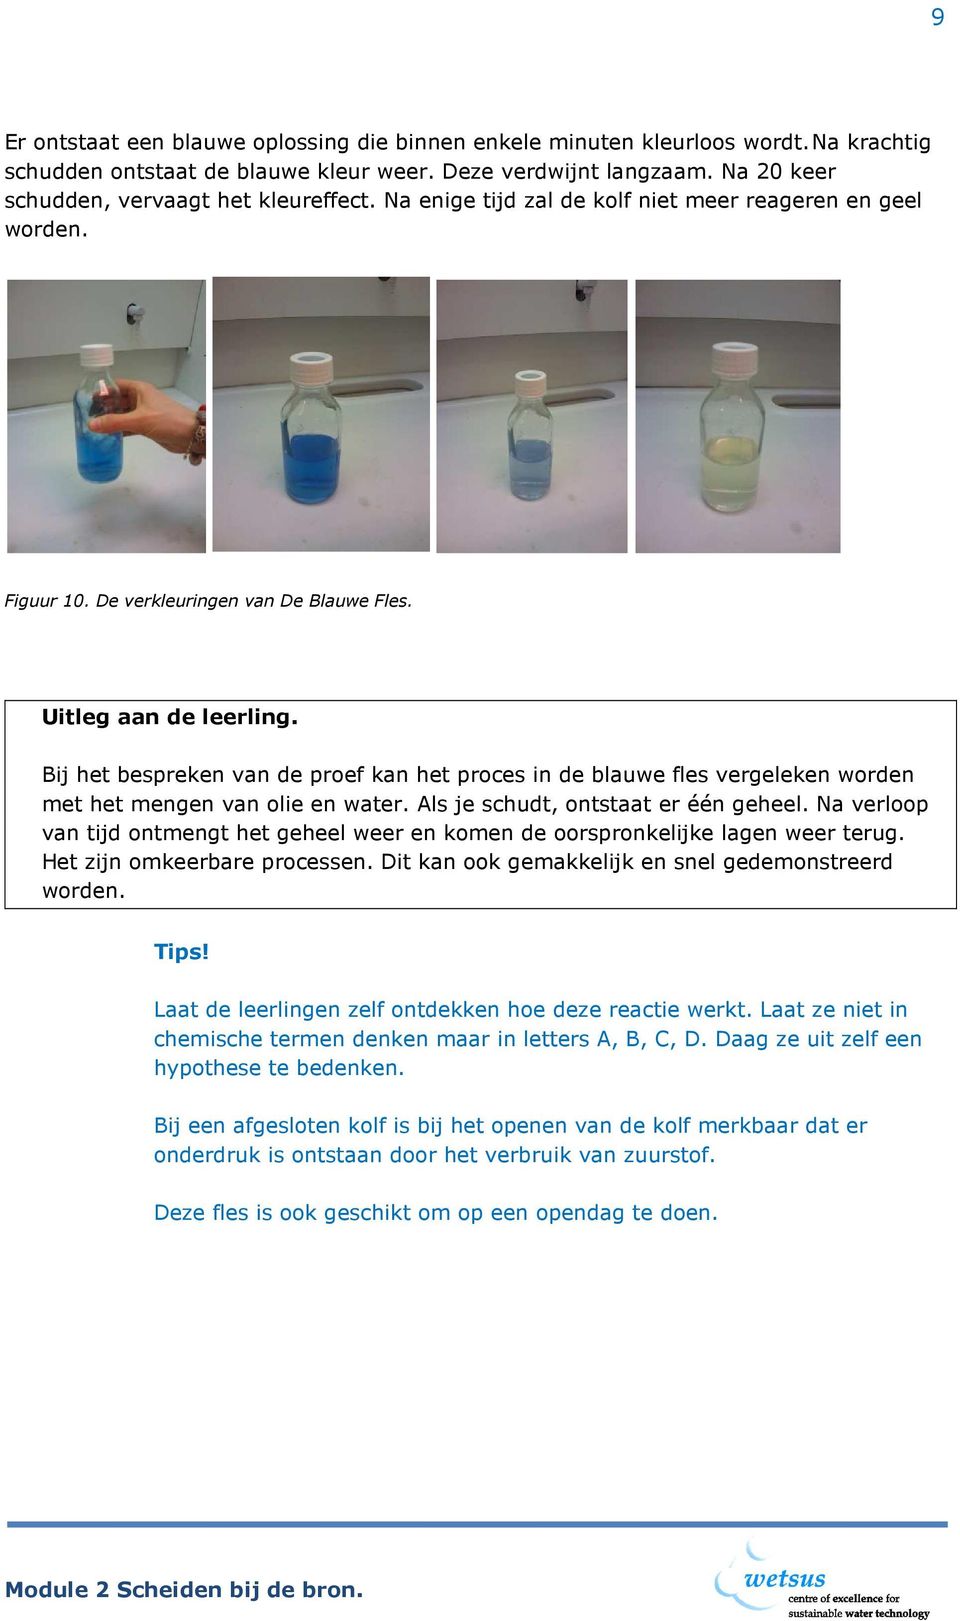 Bij het bespreken van de proef kan het proces in de blauwe fles vergeleken worden met het mengen van olie en water. Als je schudt, ontstaat er één geheel.